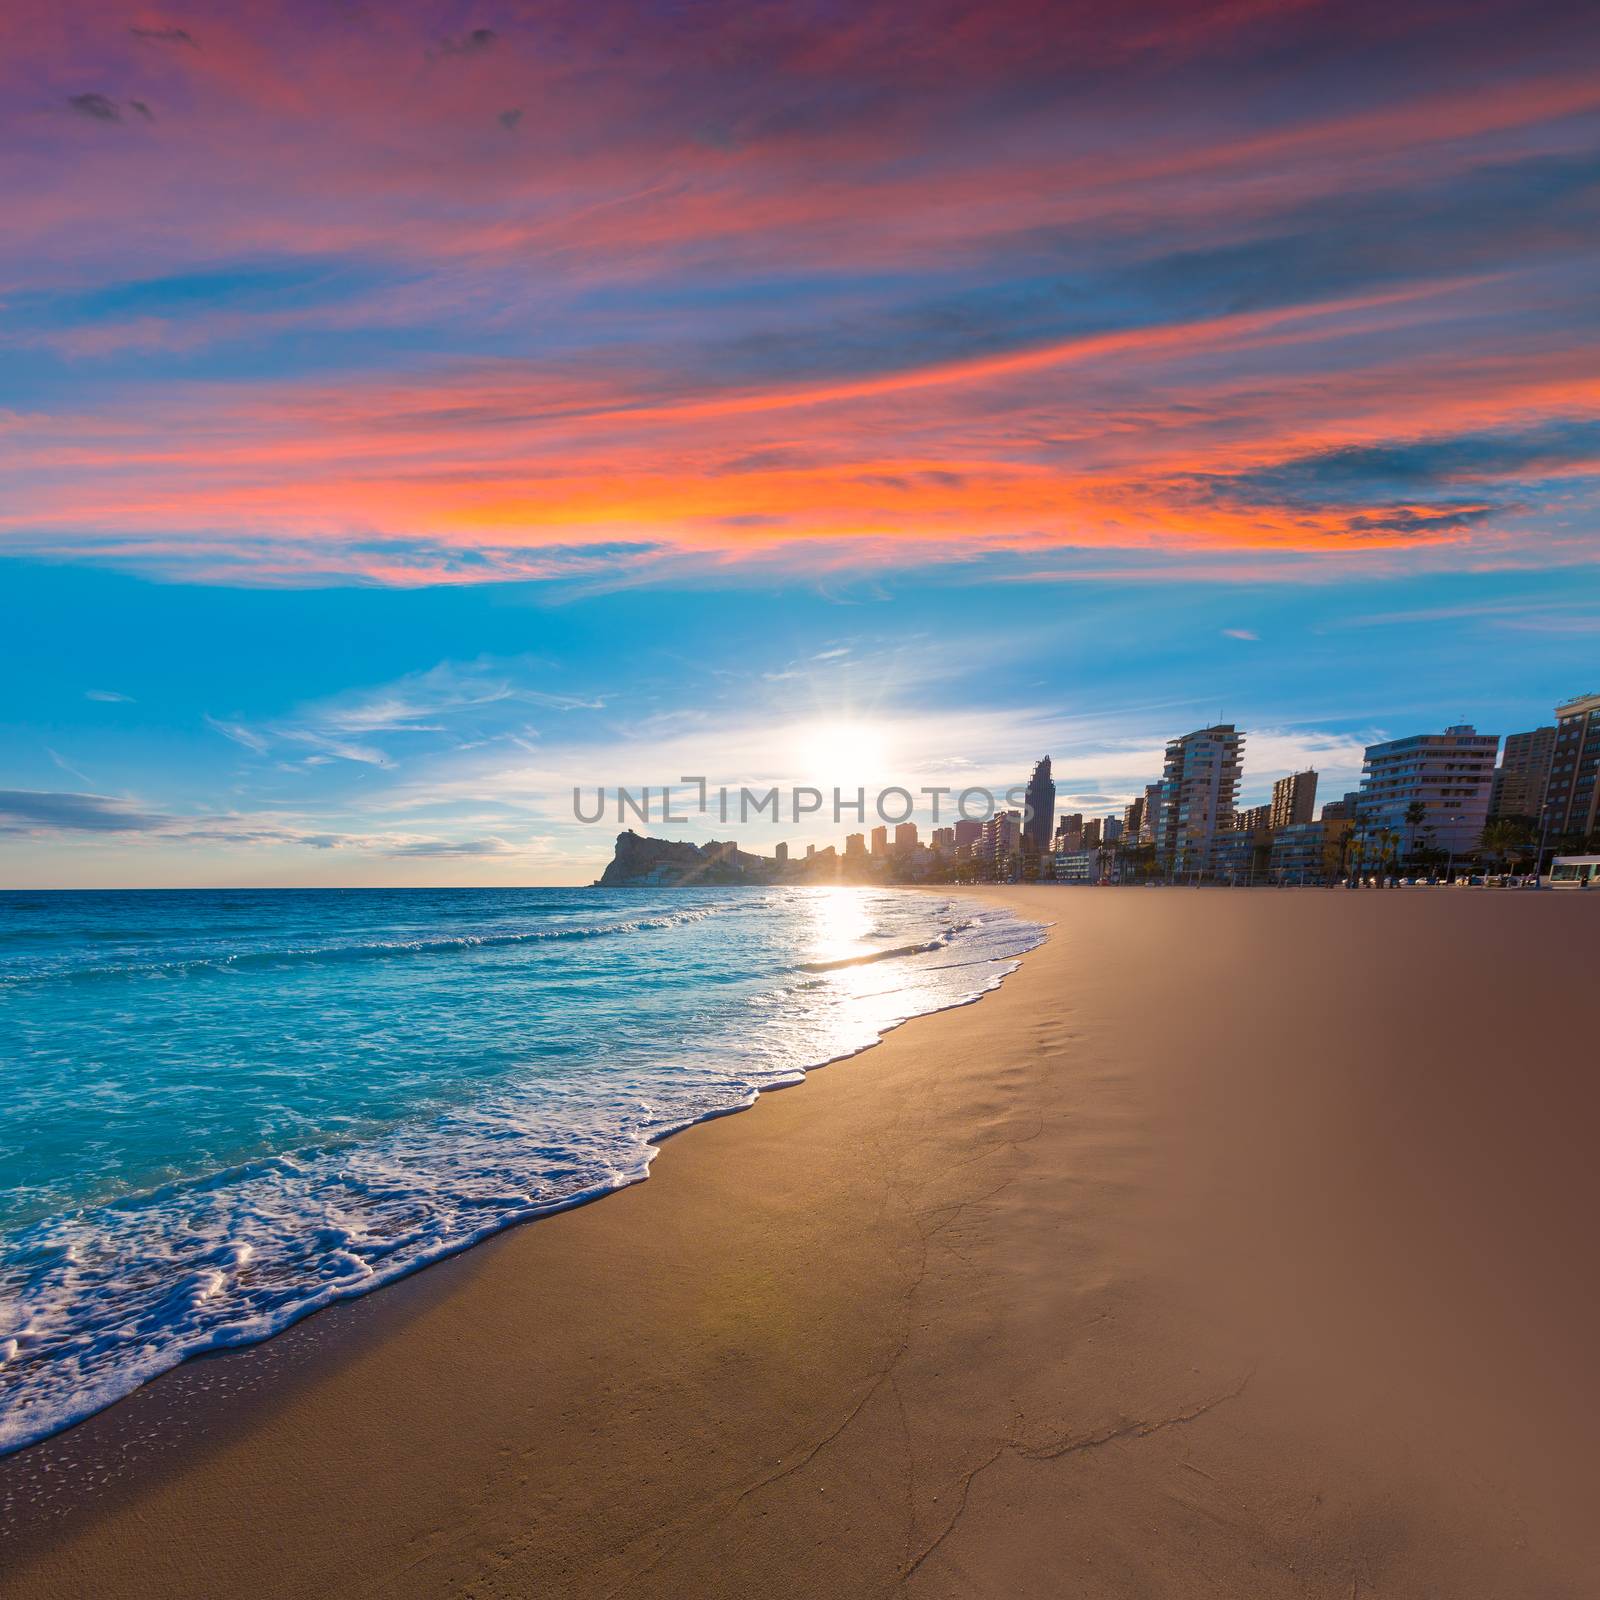 Benidorm Alicante playa de Poniente beach sunset in spain Valencian community